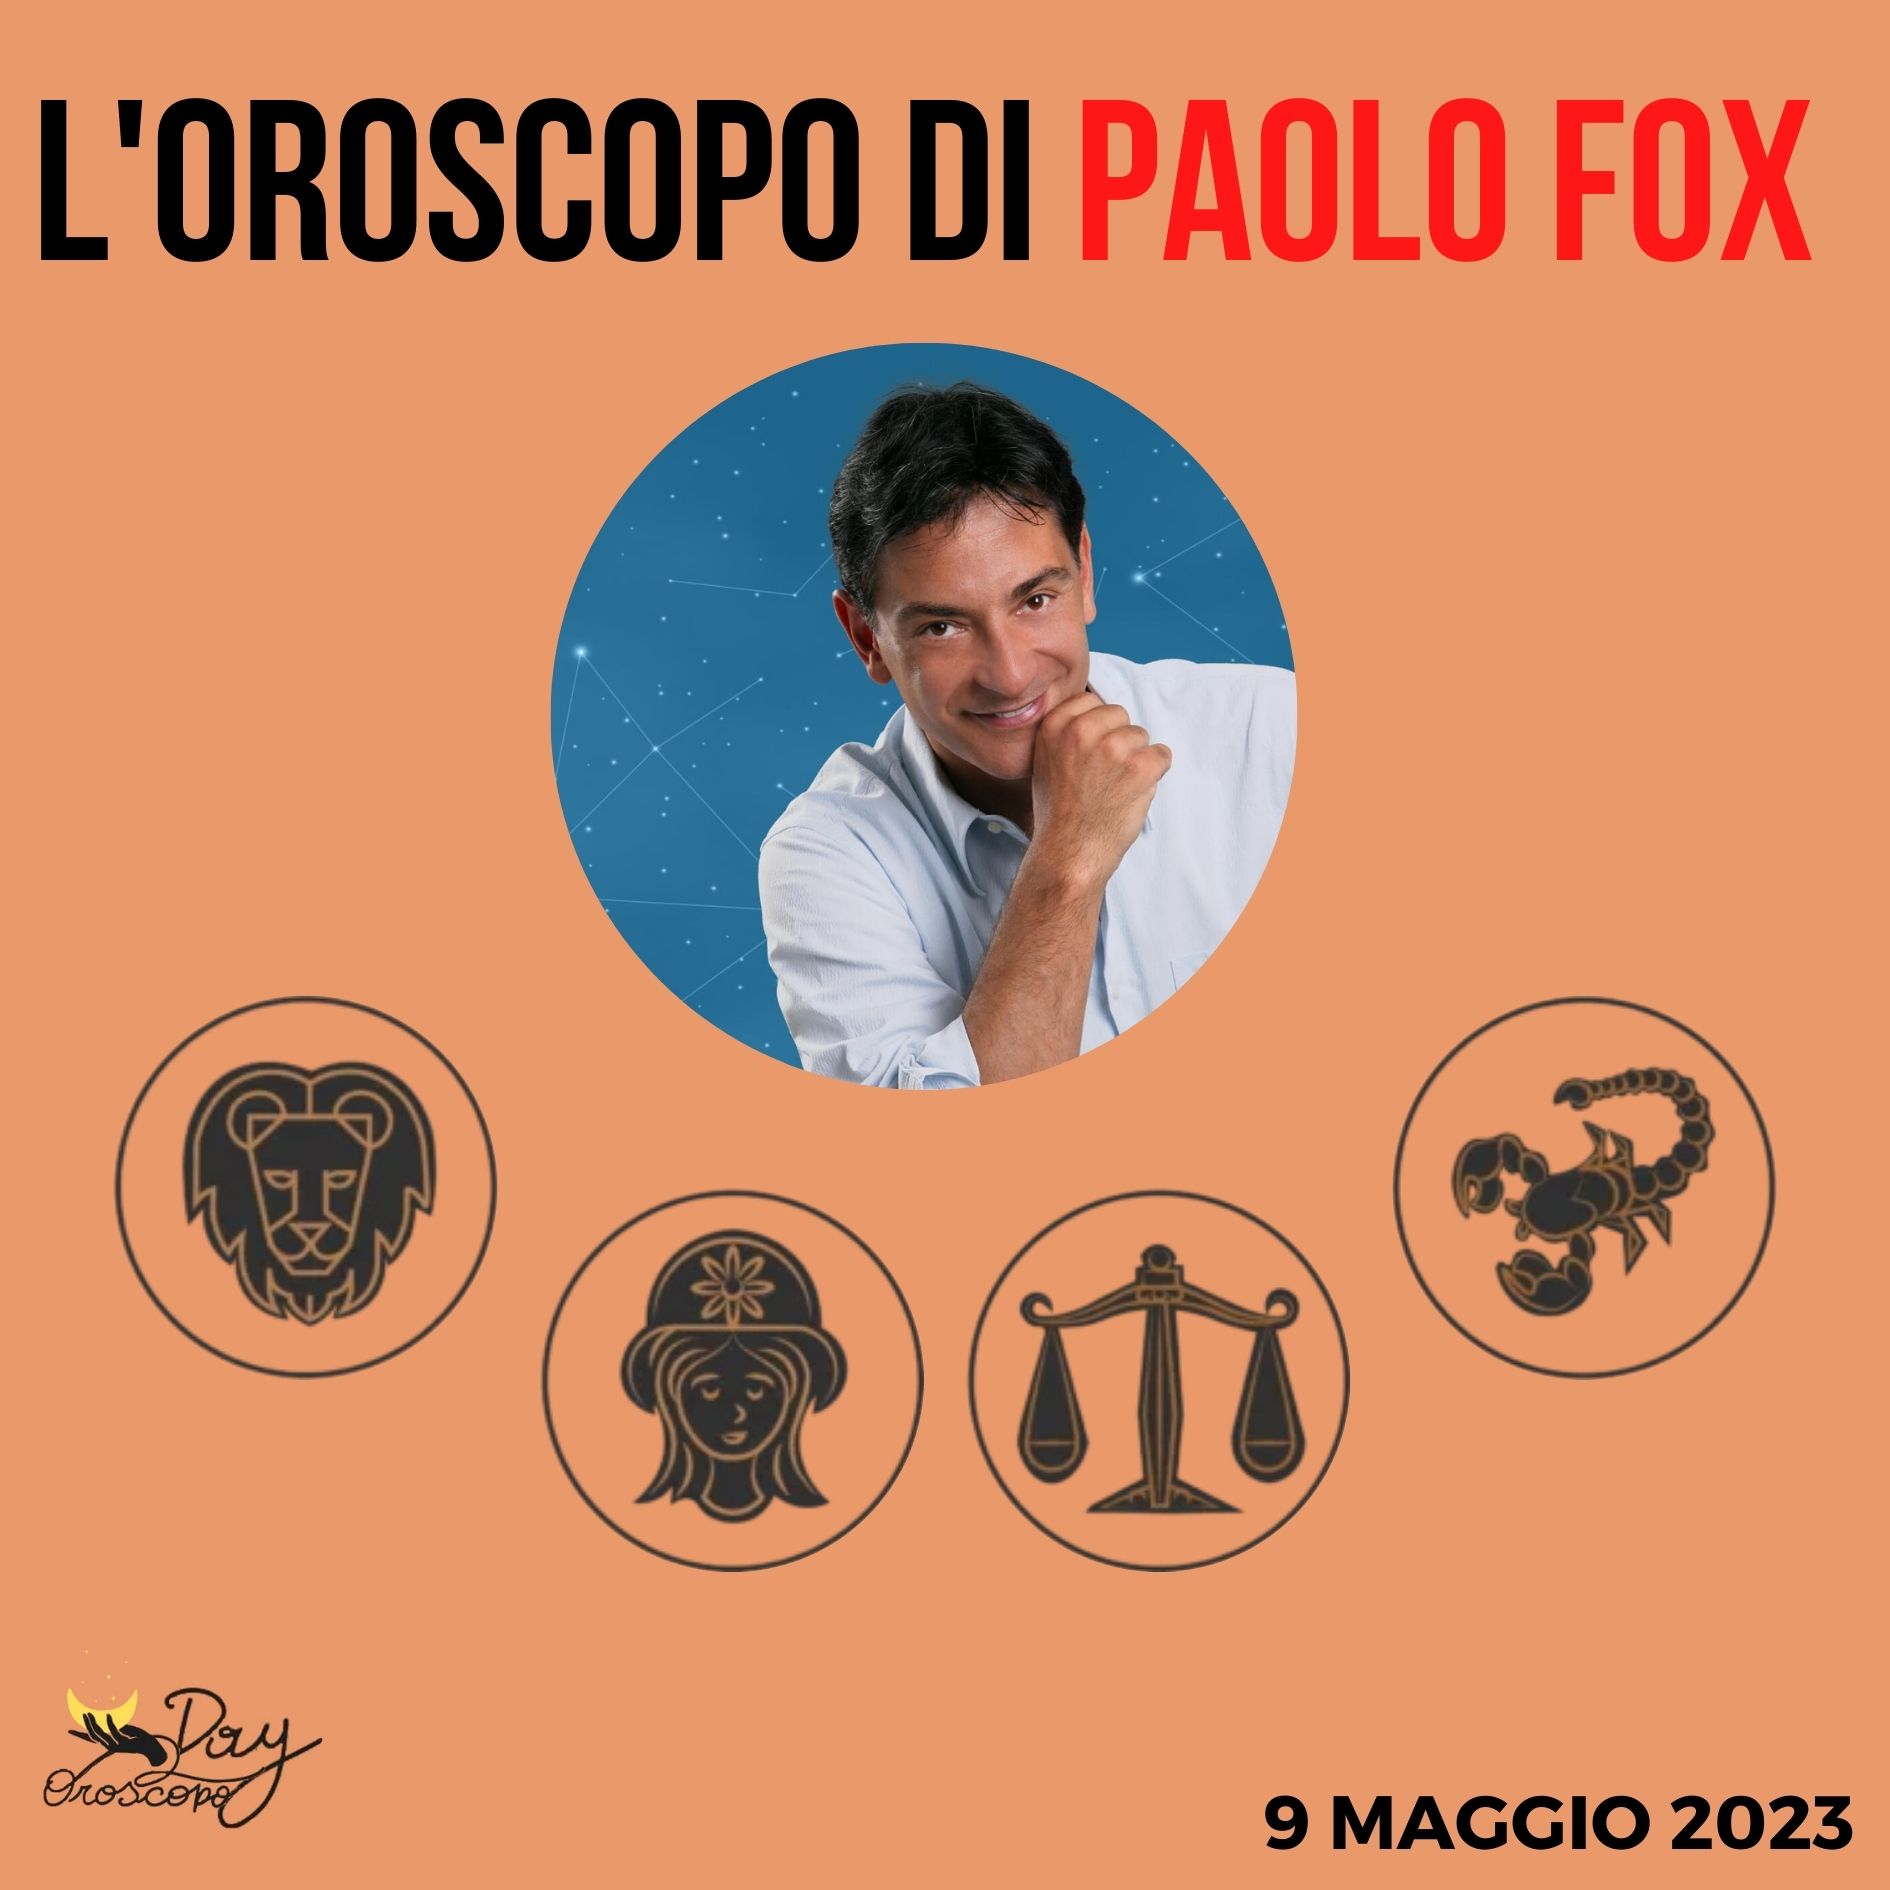 Oroscopo oggi domani Paolo Fox 9 maggio Leone Vergine Bilancia Scorpione